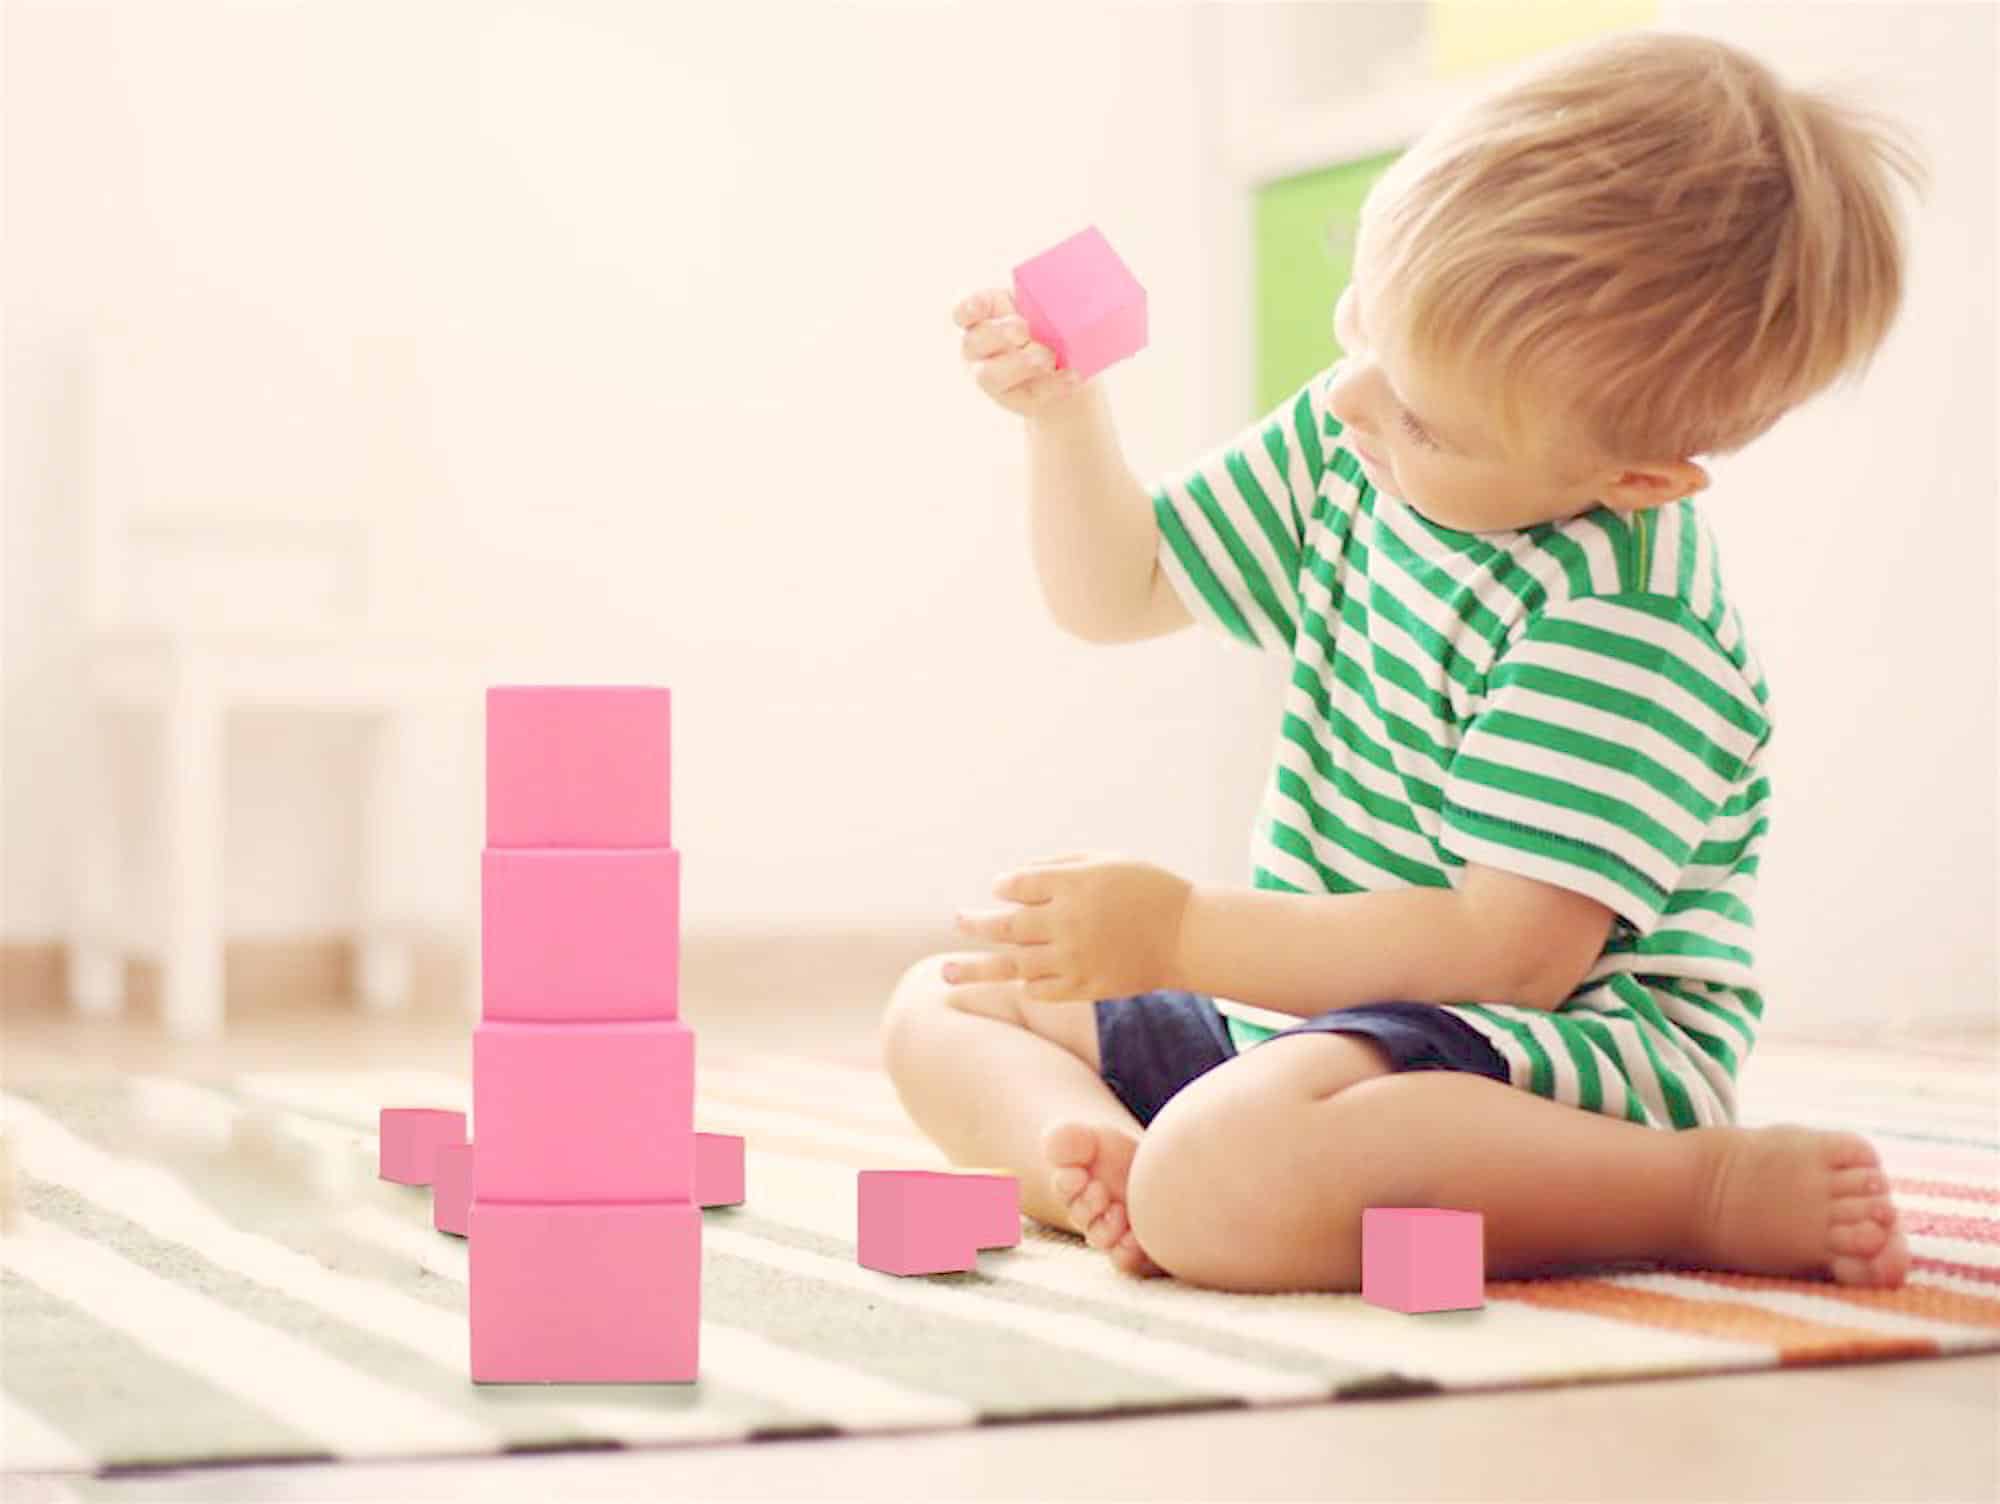 Materiales Montessori para bebes y ninos pequenos - Educando en